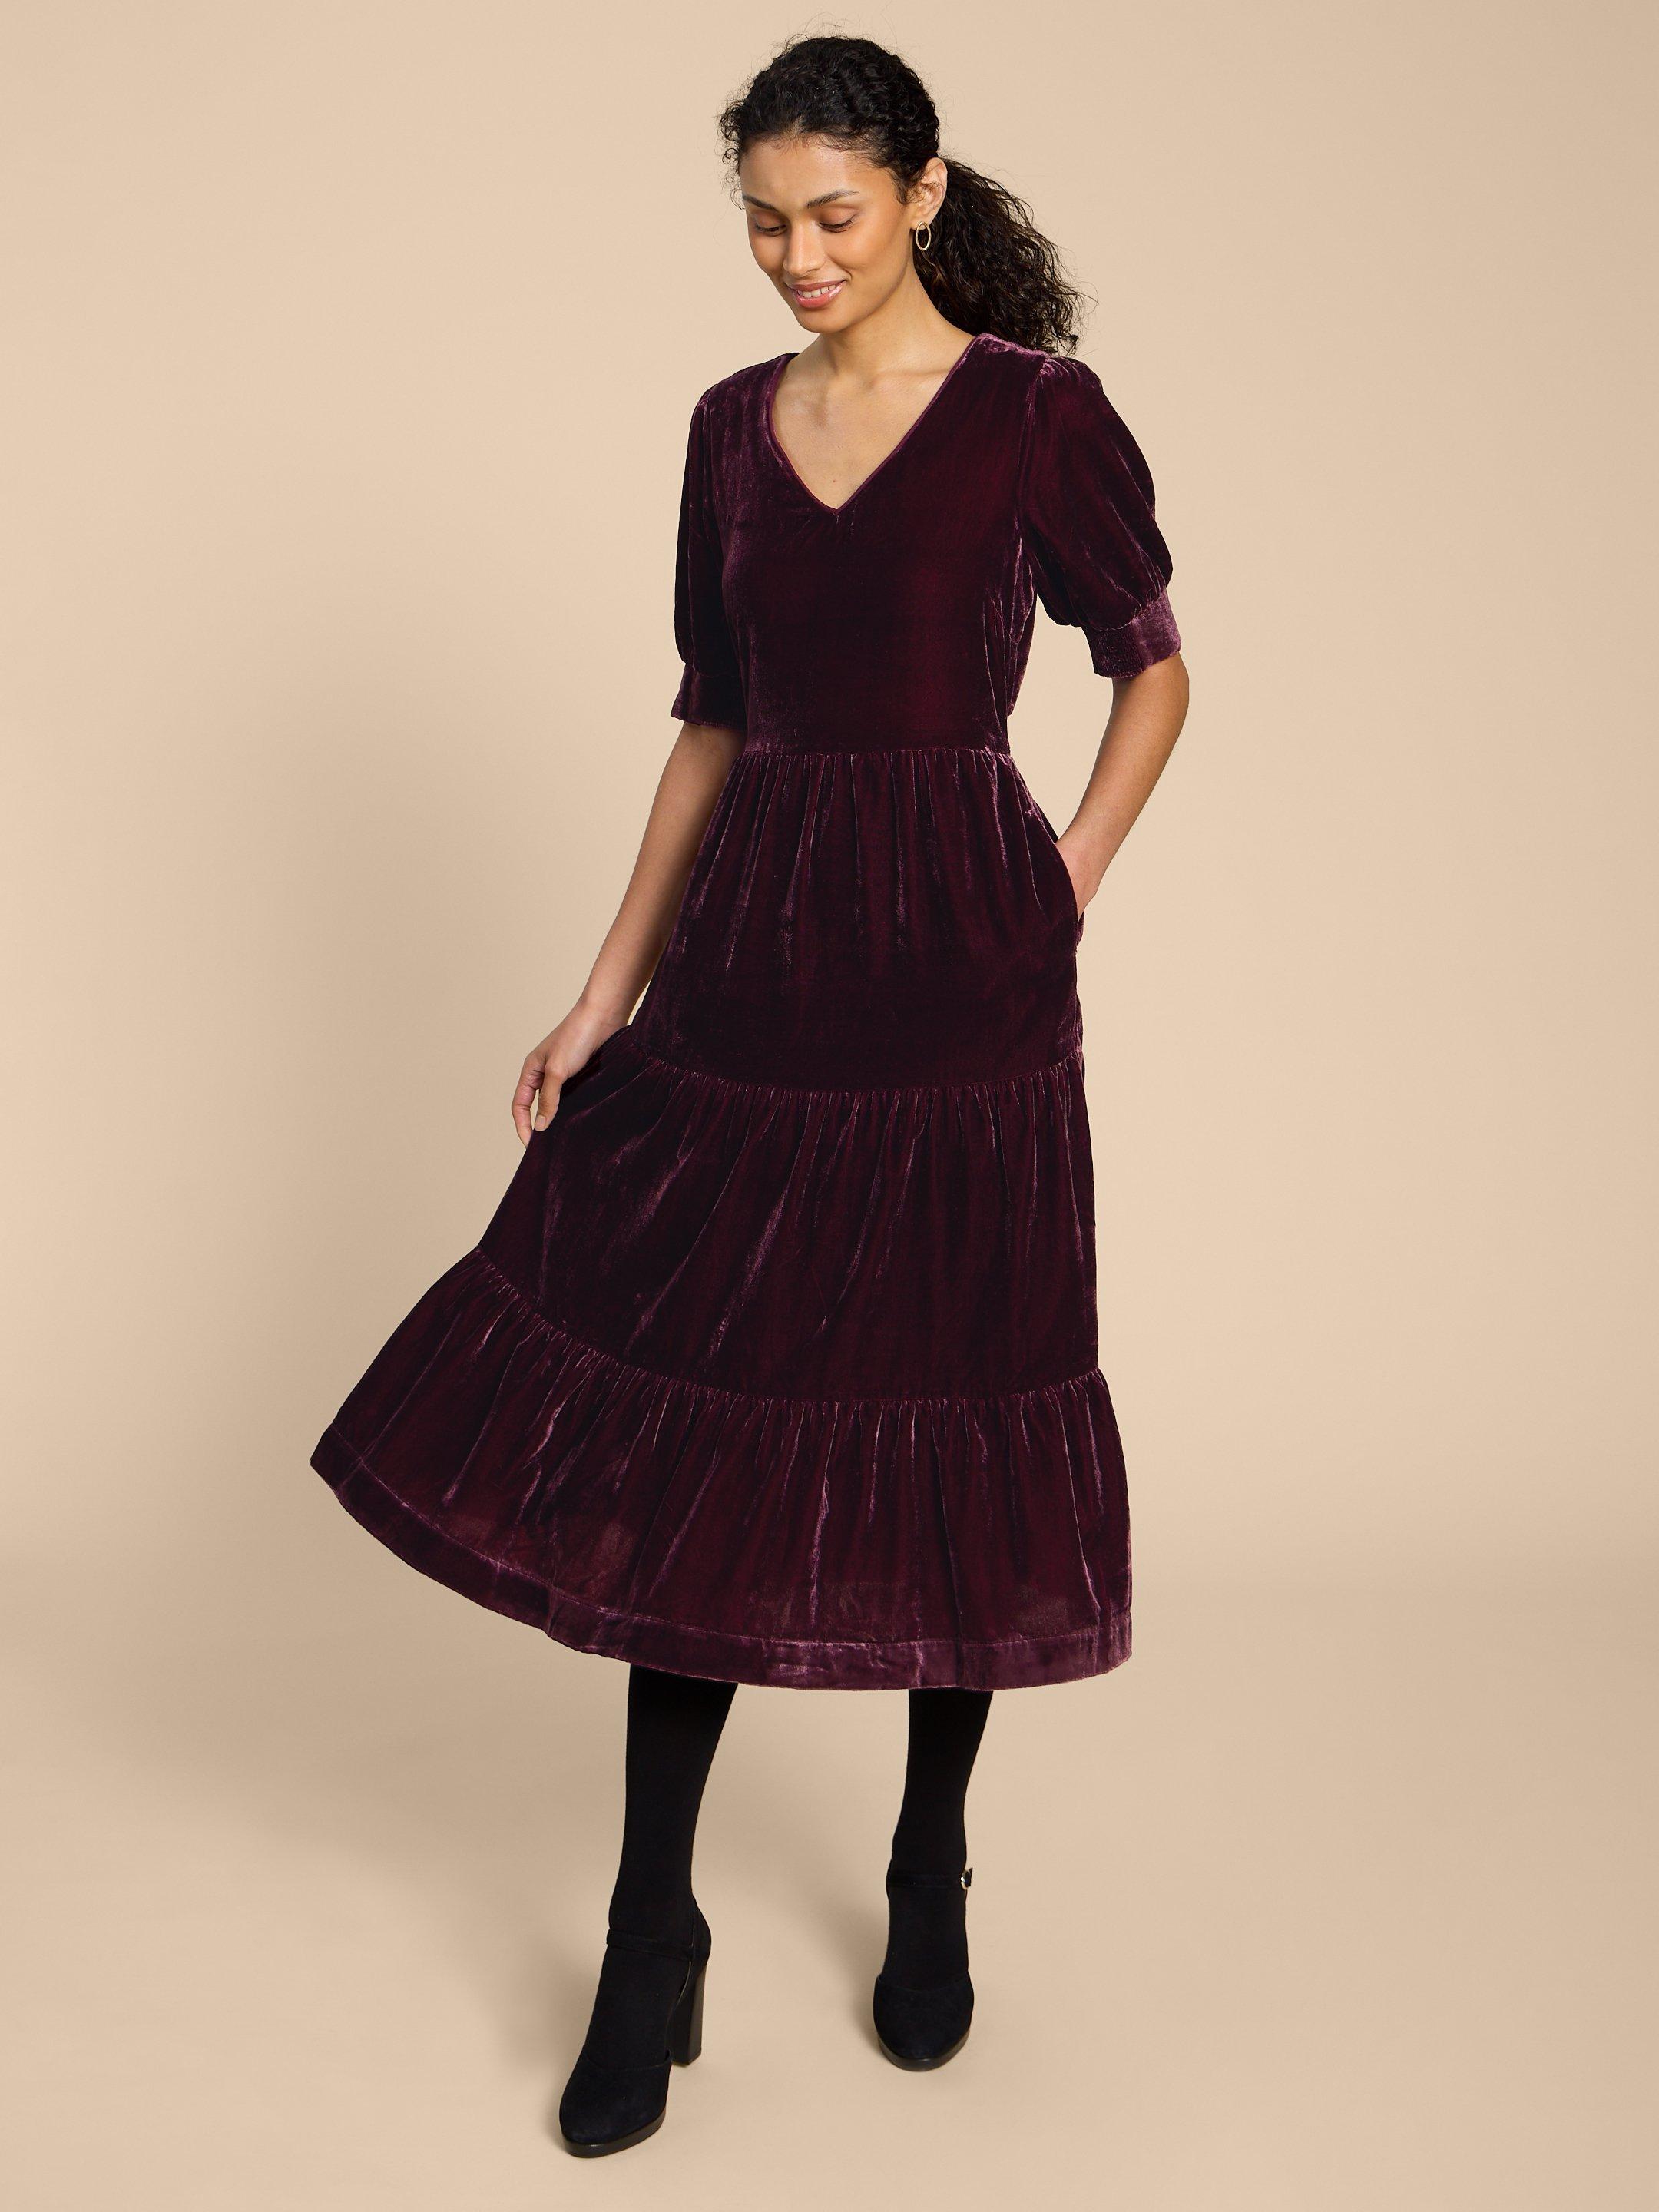 Ayra Velvet Dress in DK PLUM - MODEL FRONT